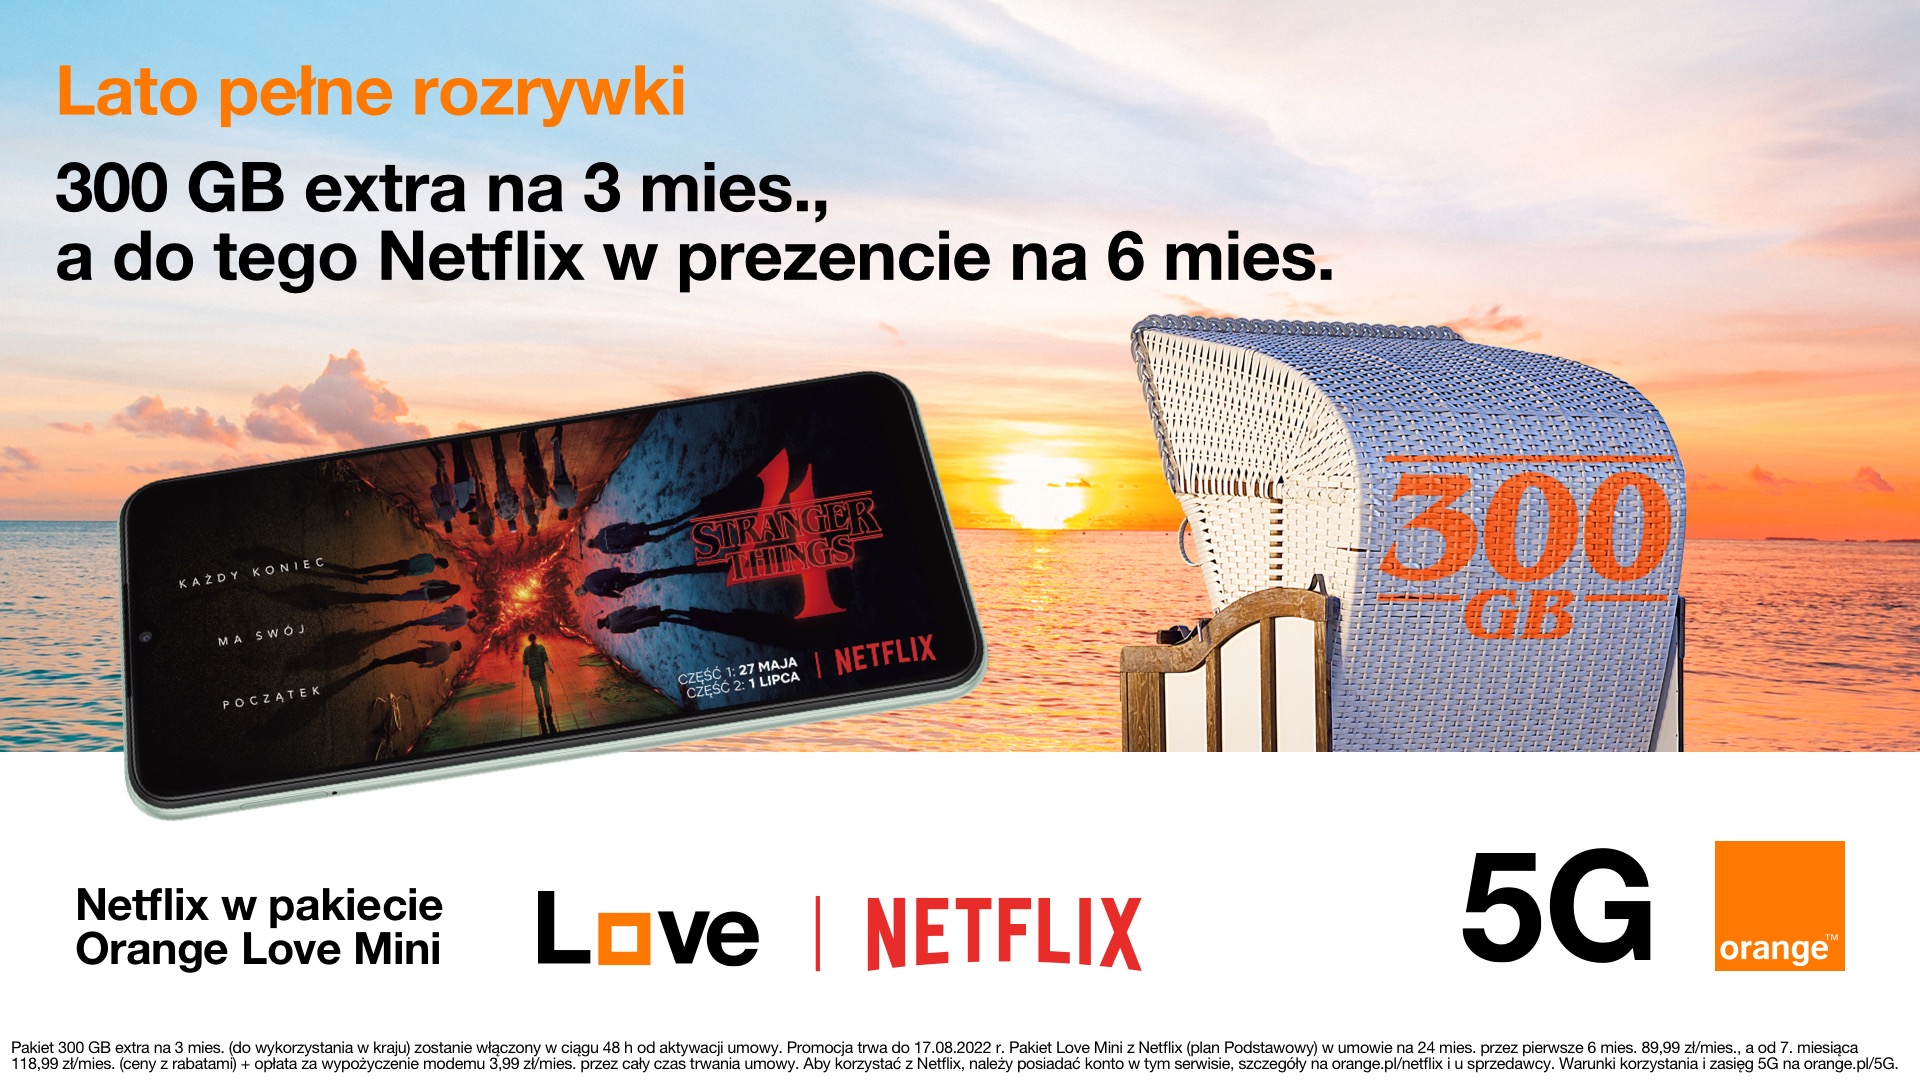 Netflix w pakiecie Orange Love Mini